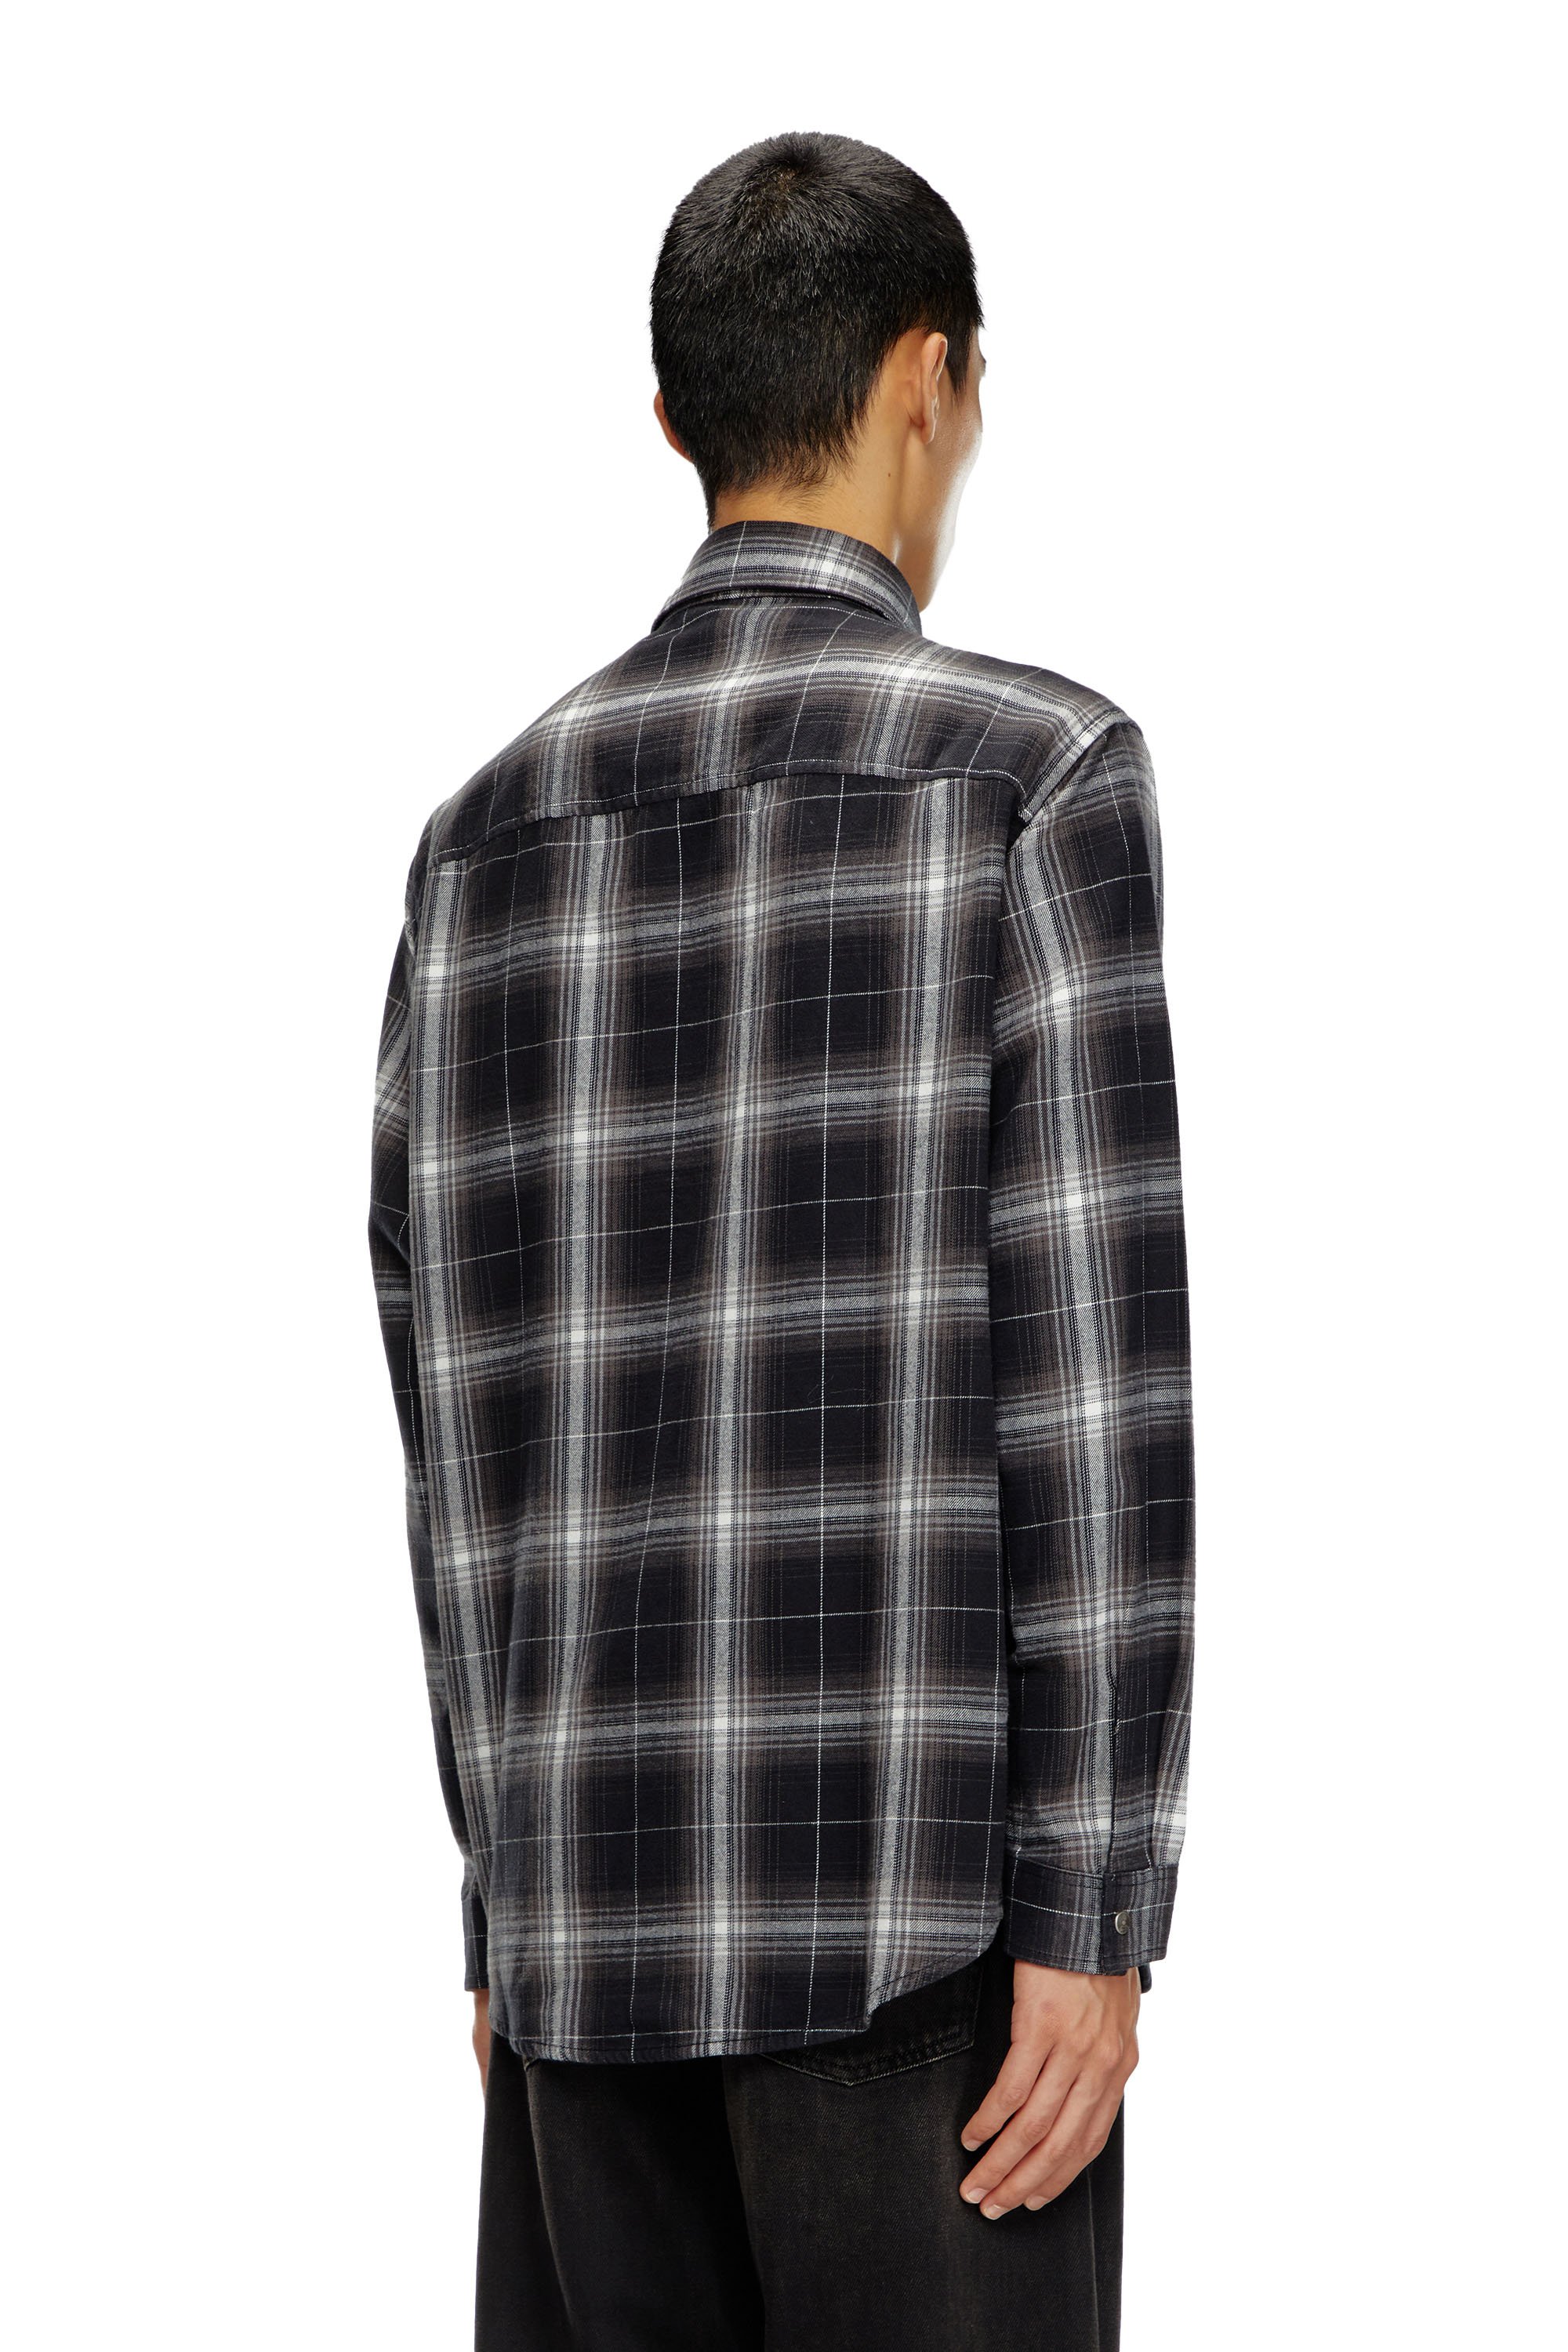 Diesel - S-SIMPLY-A, Hombre Camisa de franela a cuadros in Negro - Image 4